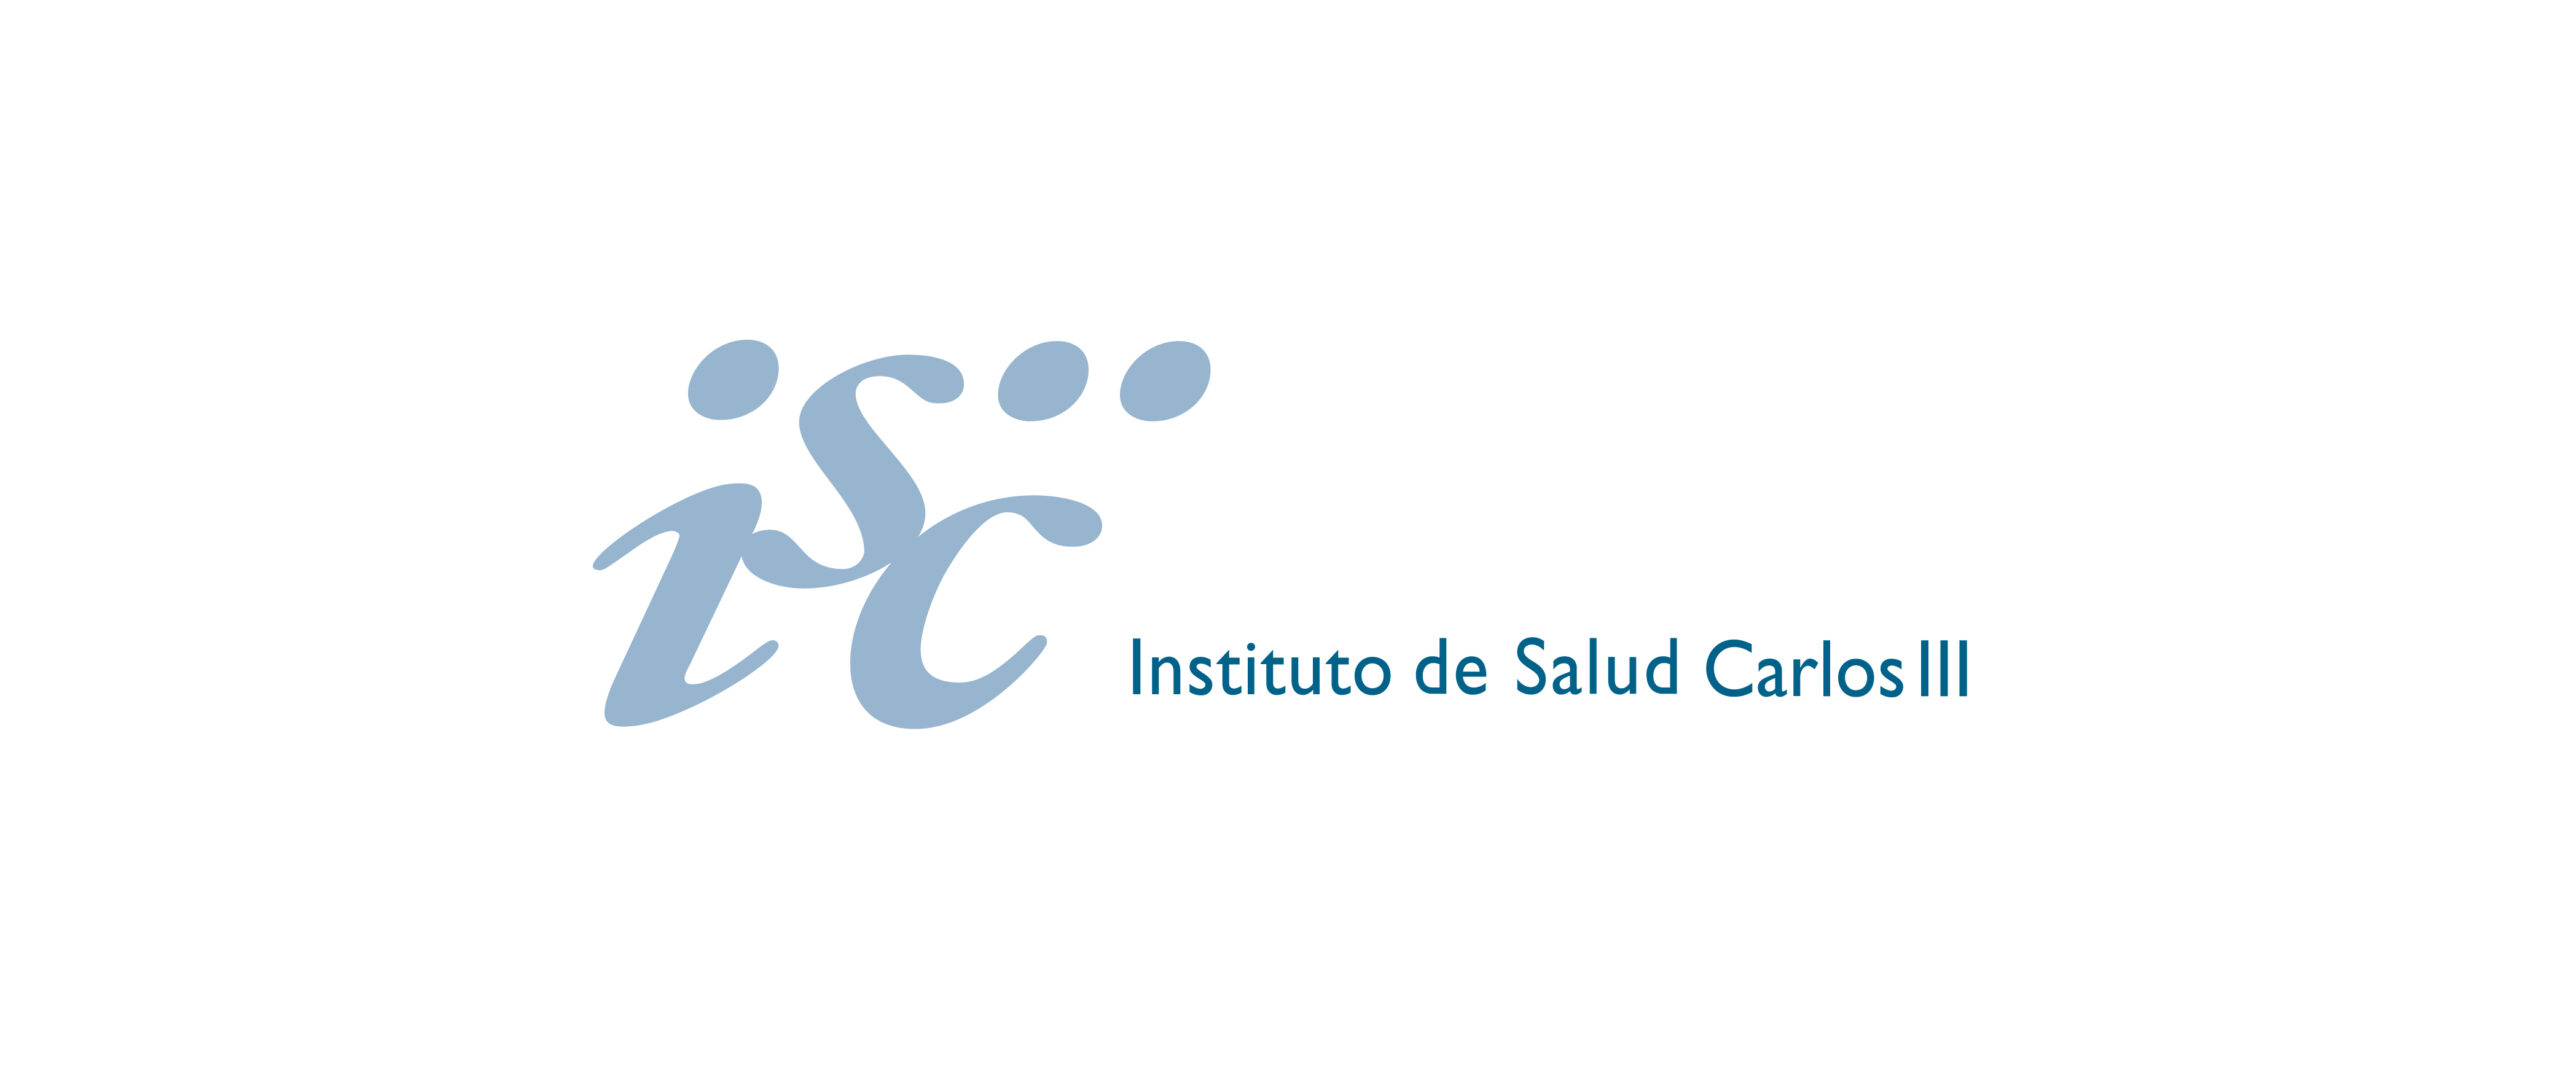 Instituto de salud Carlos III - Logo